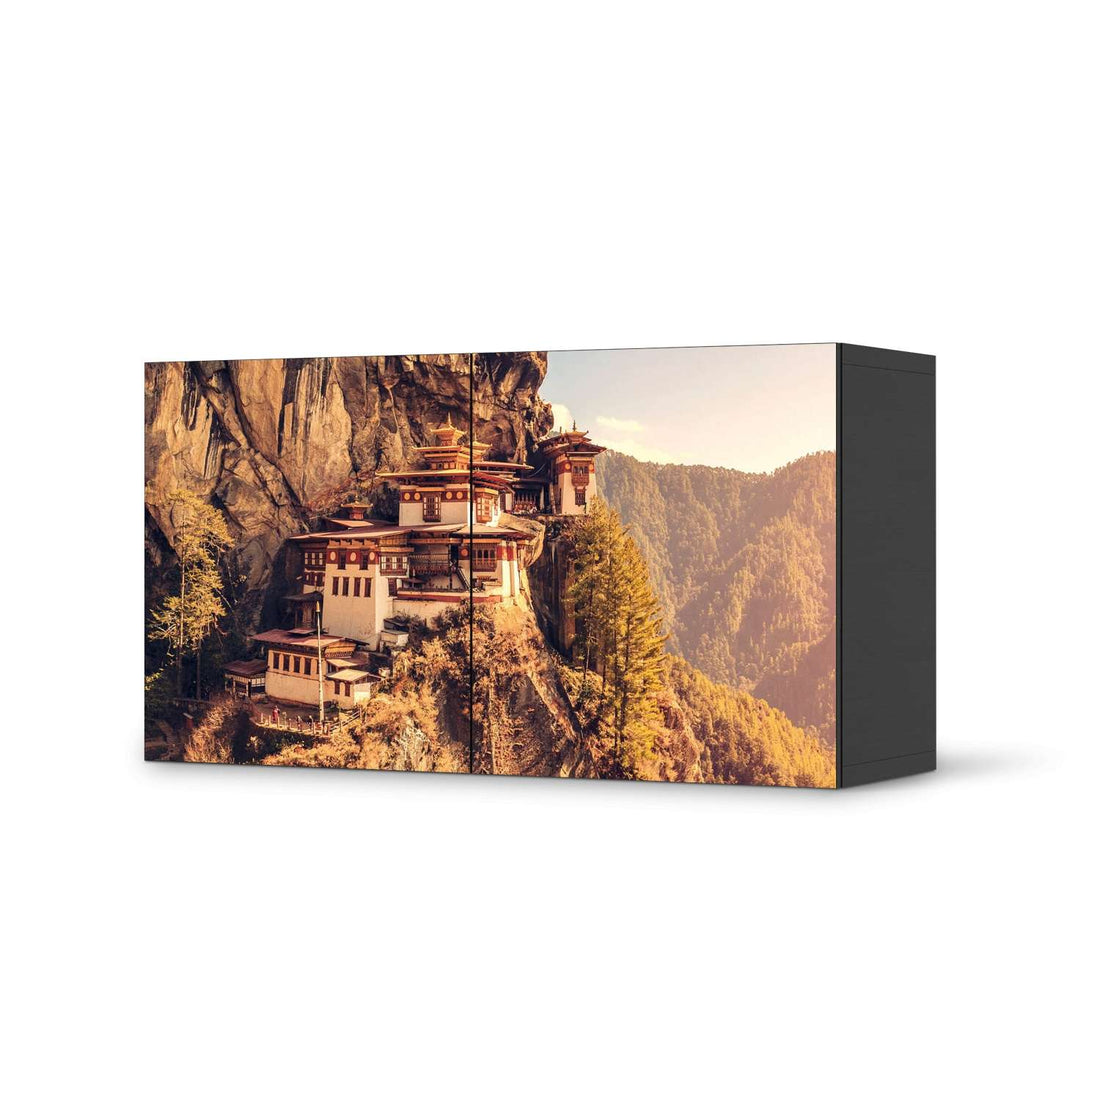 Folie für Möbel Bhutans Paradise - IKEA Besta Regal Quer 2 Türen - schwarz